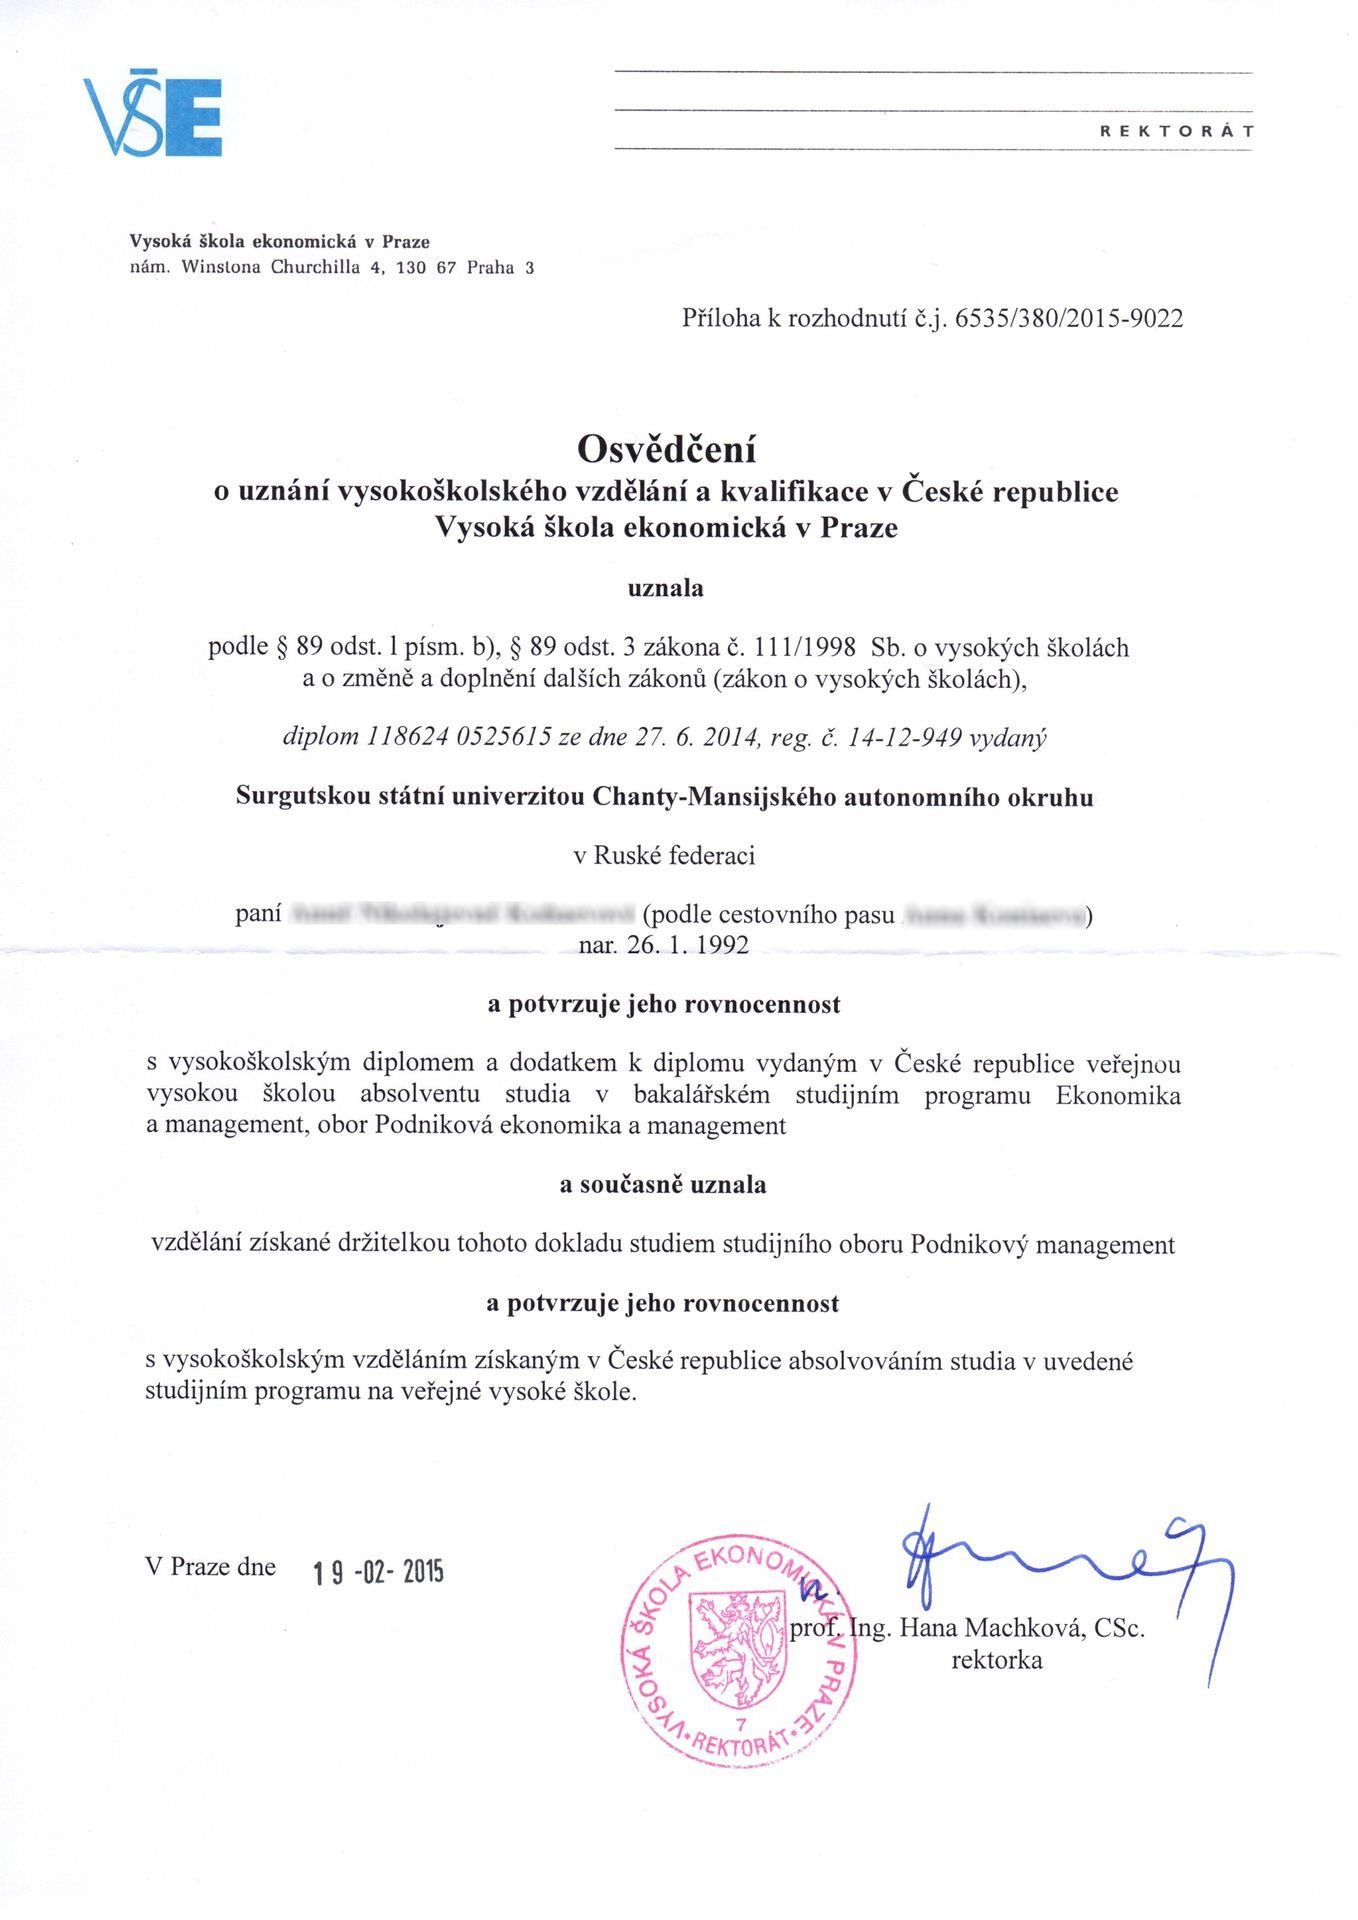 Нострификация диплома в чехии ⋆ іа "єуработа"